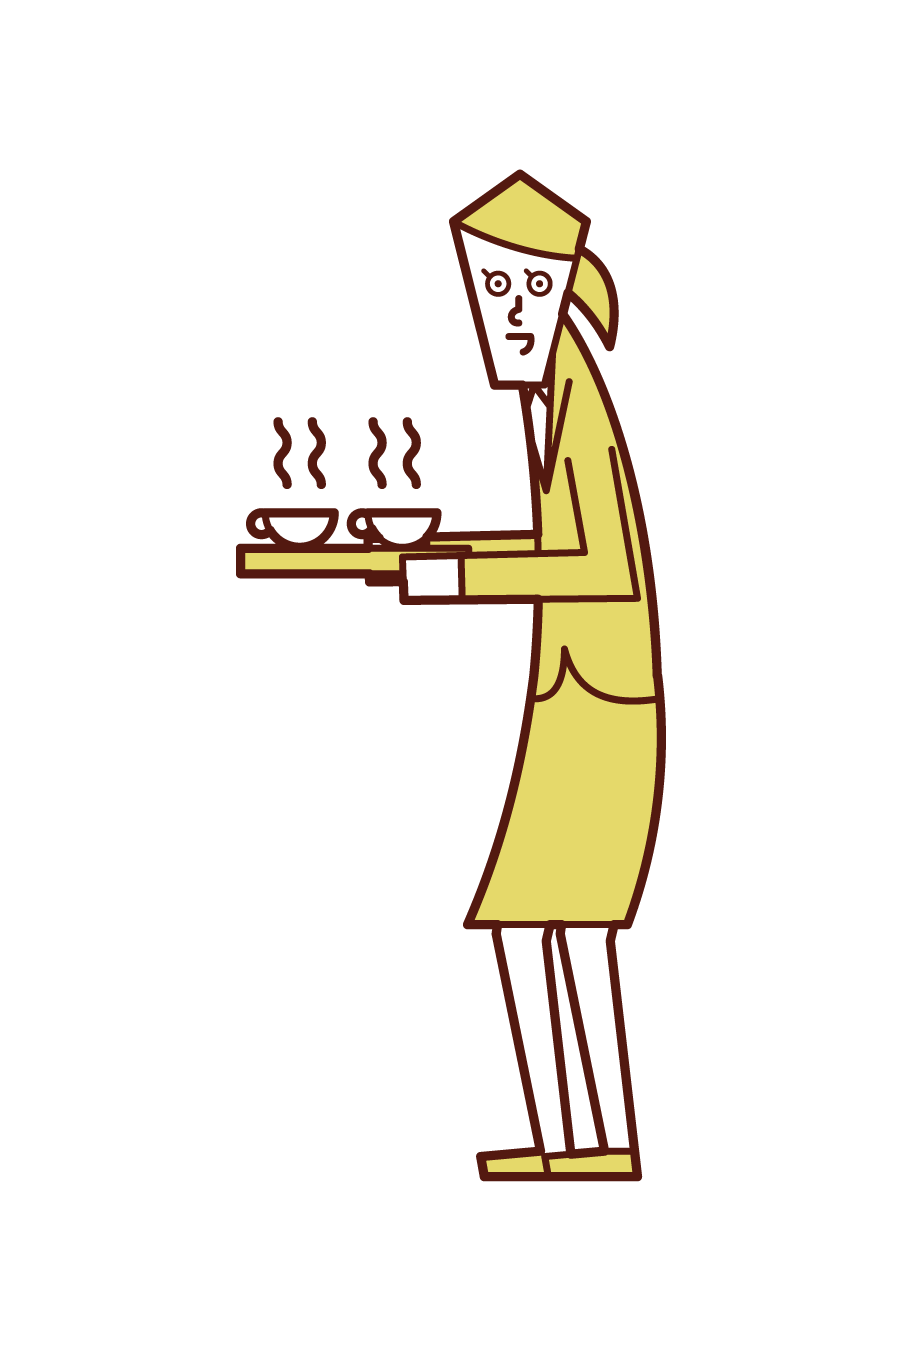 차와 커피를 제공하는 사람 (여성)의 그림